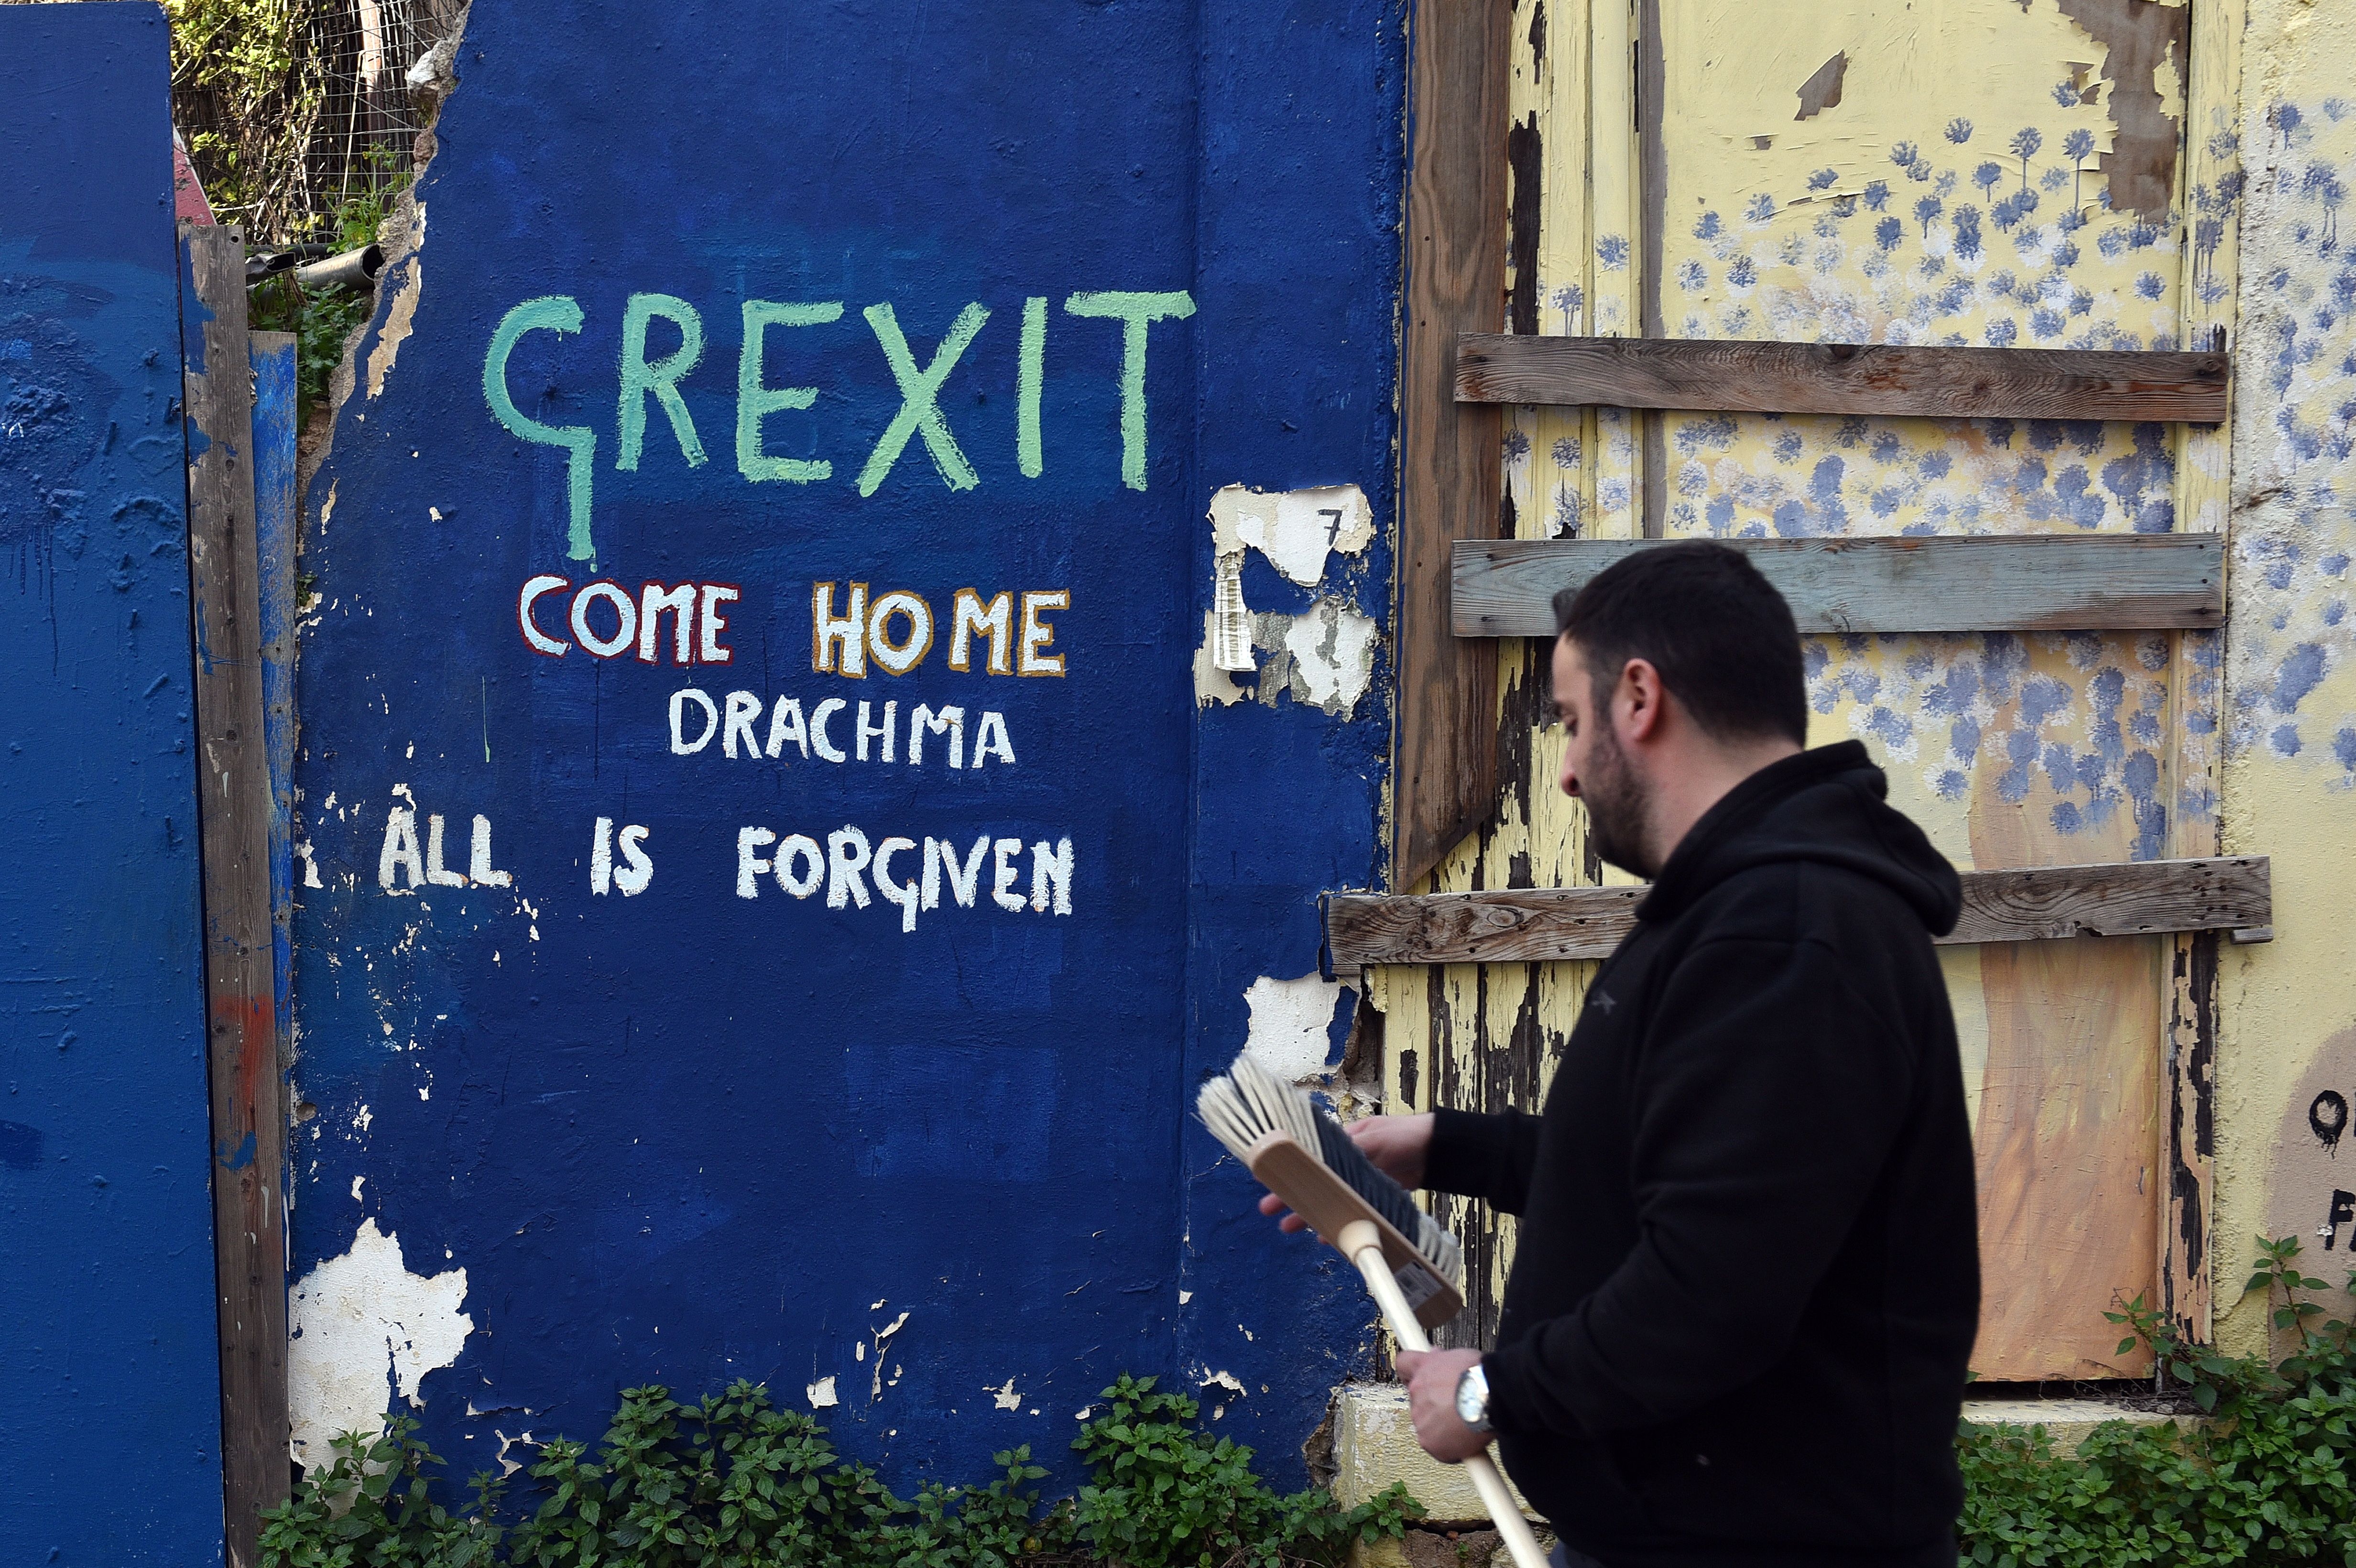 EU-Bürgerinitiative gegen Überschuldung Griechenlands nicht möglich